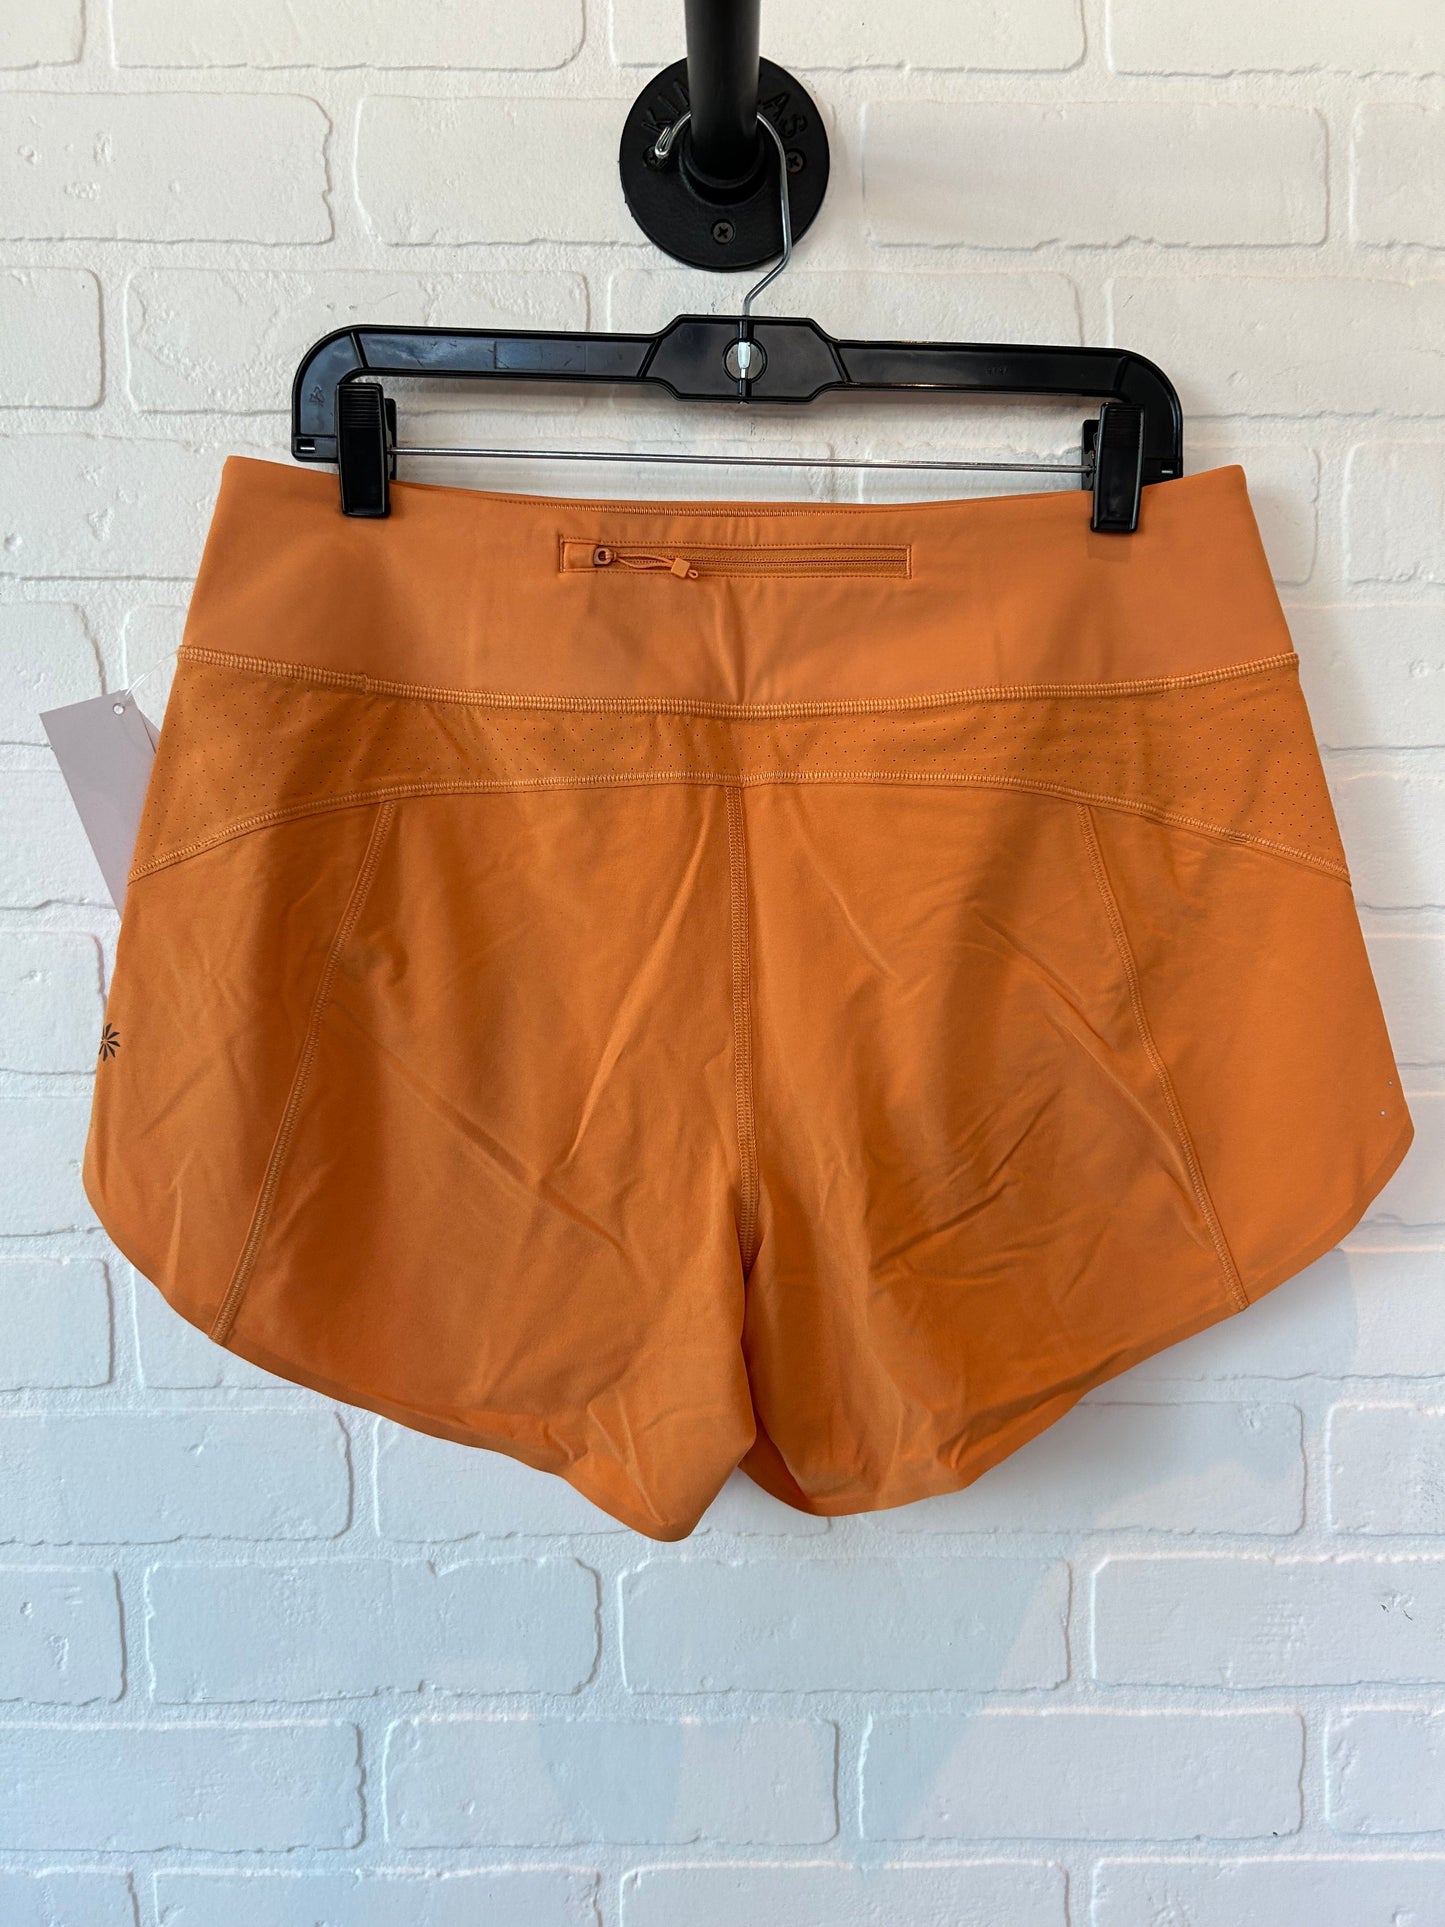 Orange Athletic Shorts Athleta, Size 8